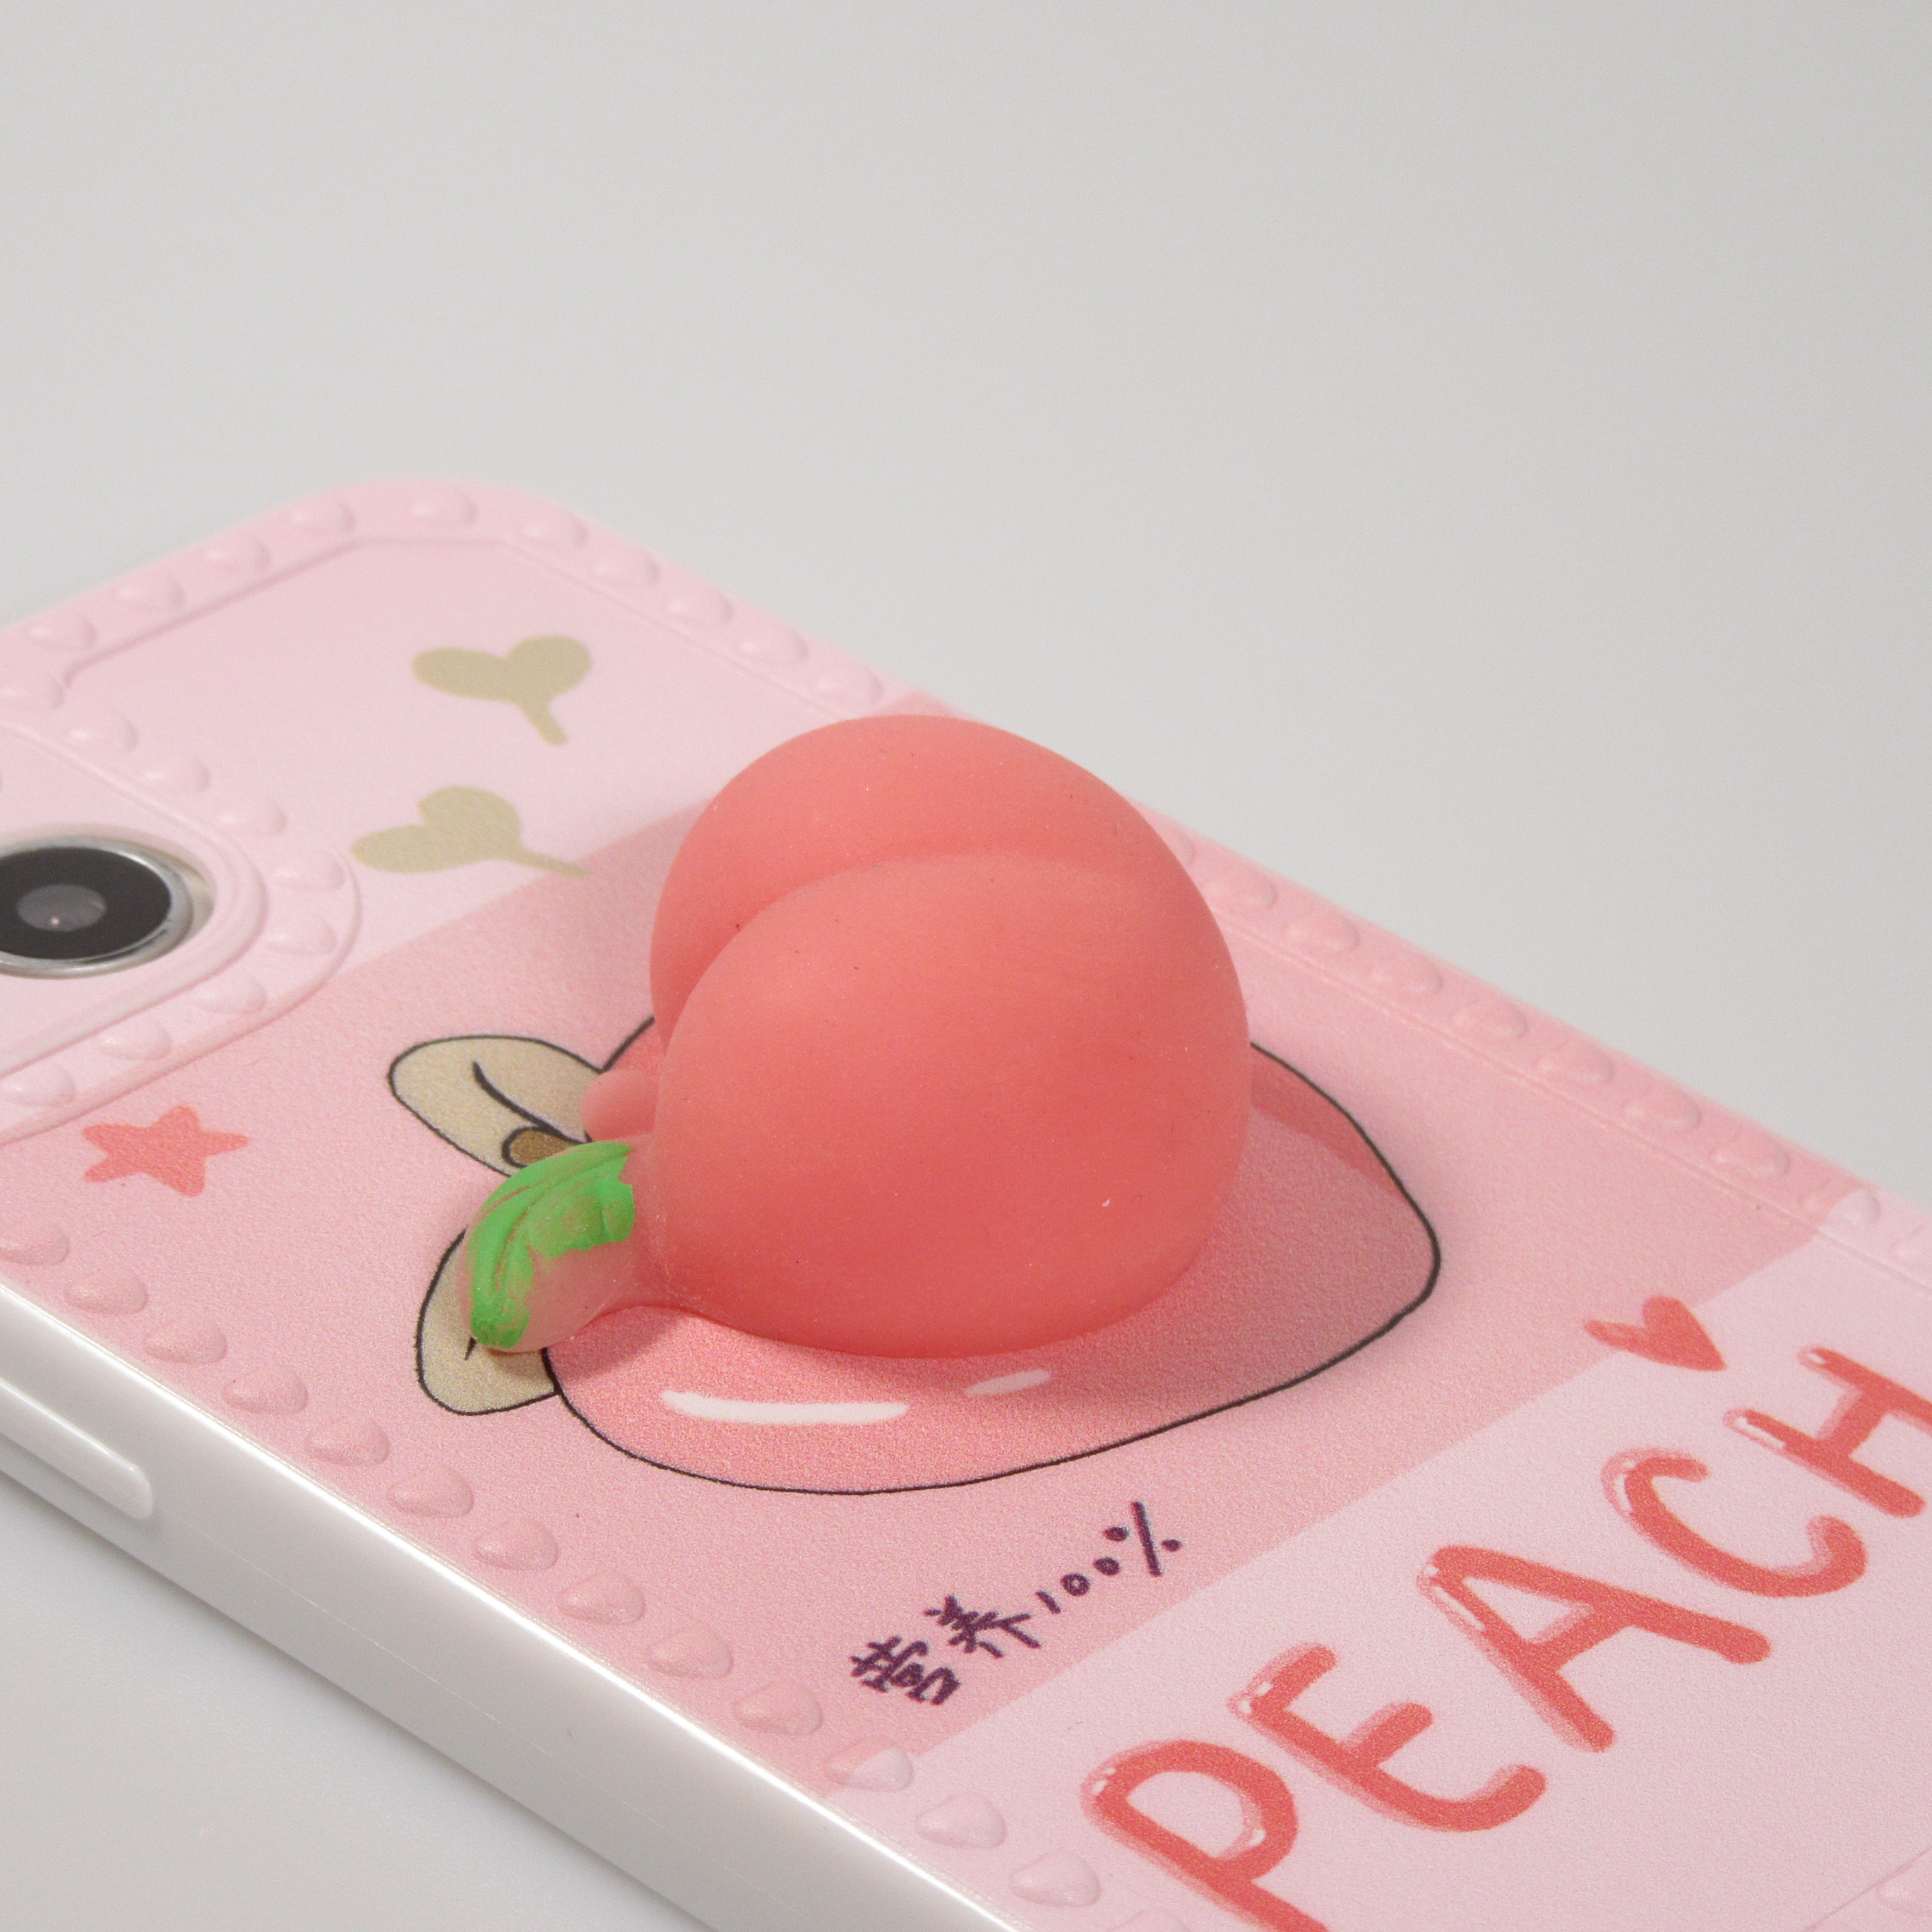 Coque rigide pour iPhone avec impression 3D - Puzzle violet et rose - Un  accessoire créatif et stimulant pour votre iPhone